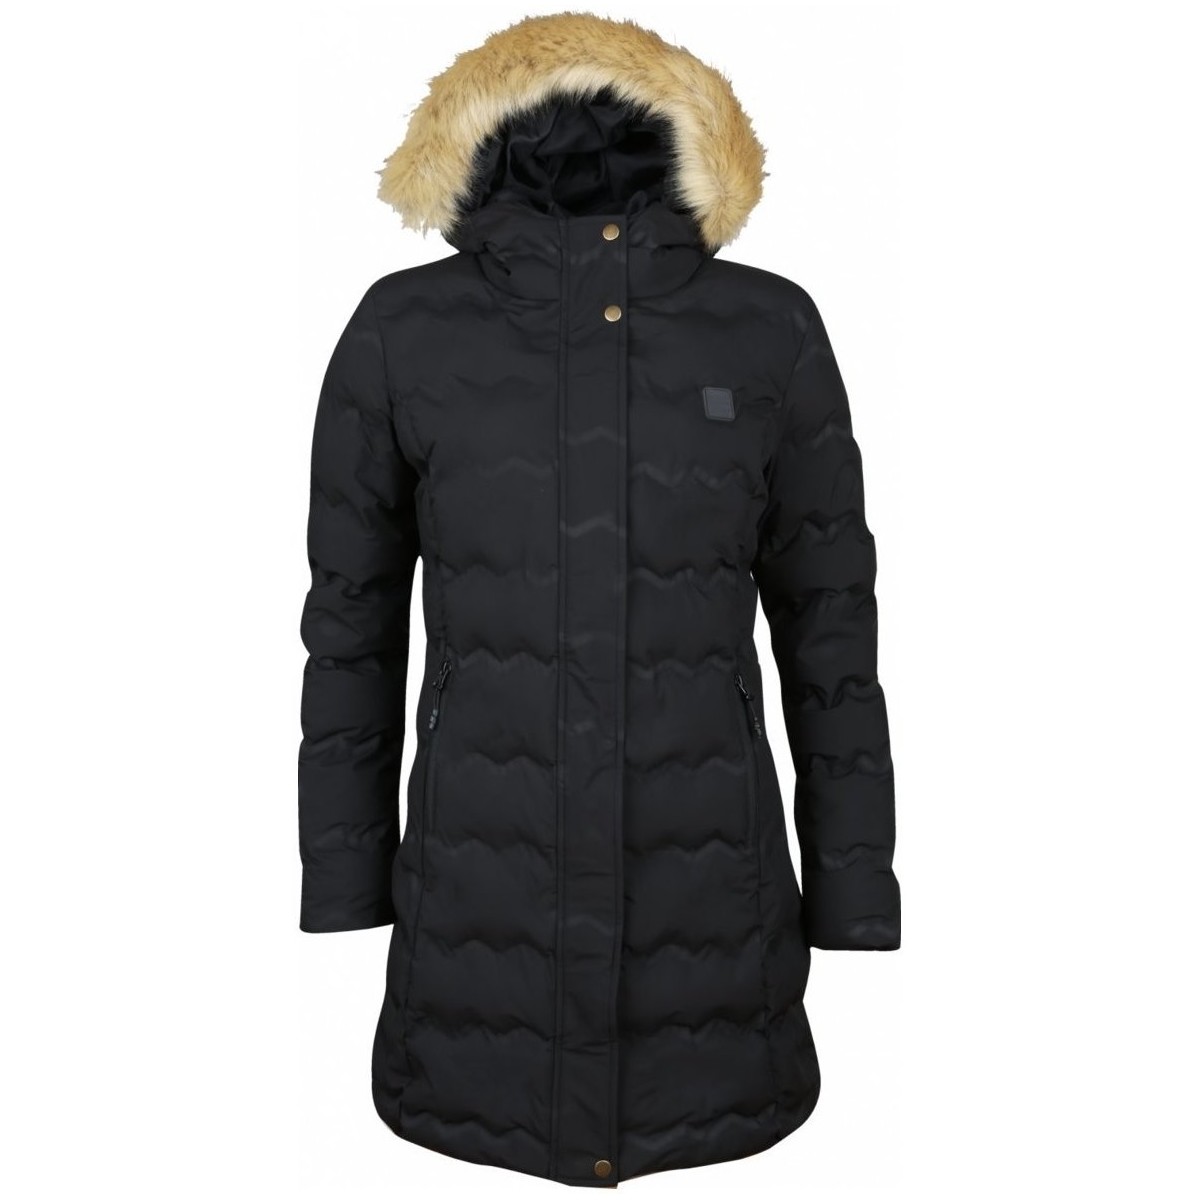 Kleidung Damen Jacken High Colorado Sport WINNIE-L, Lds. padded coat,sch 1082183 9000 Schwarz